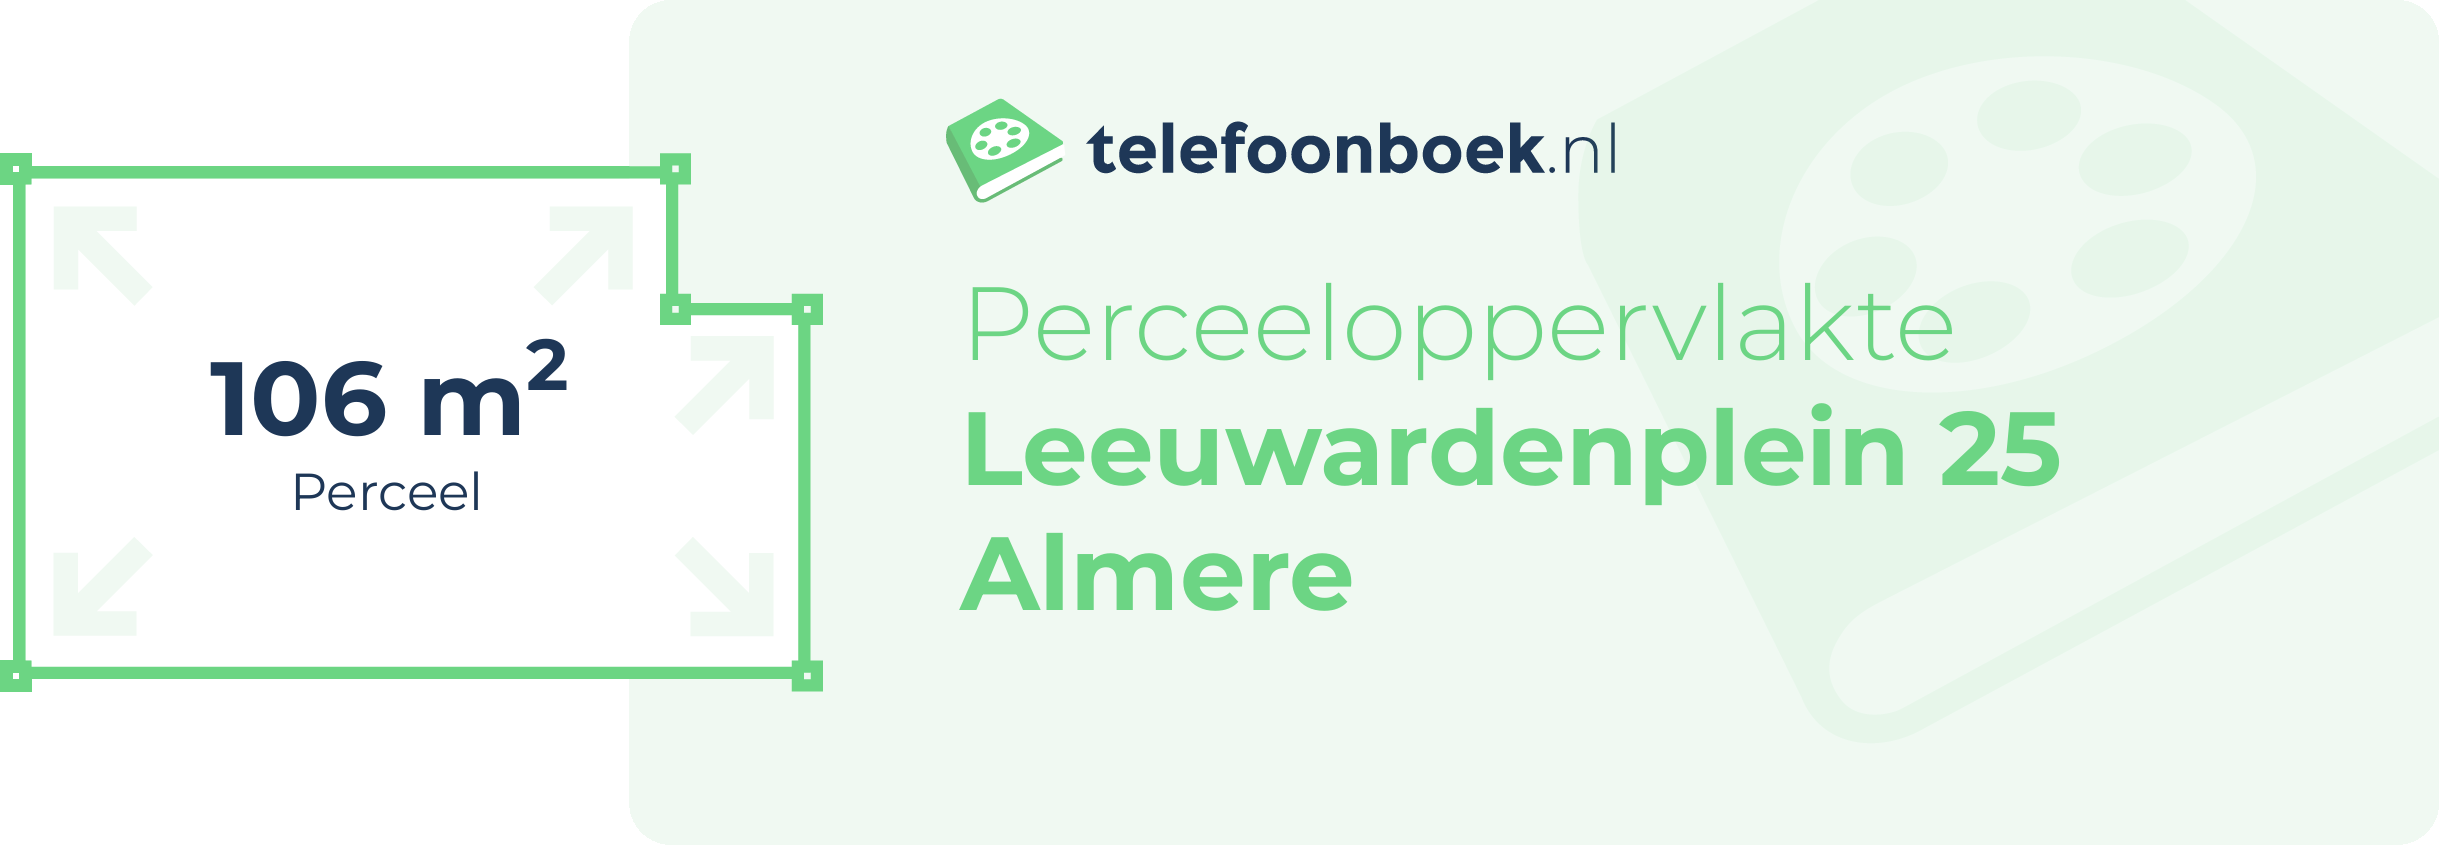 Perceeloppervlakte Leeuwardenplein 25 Almere